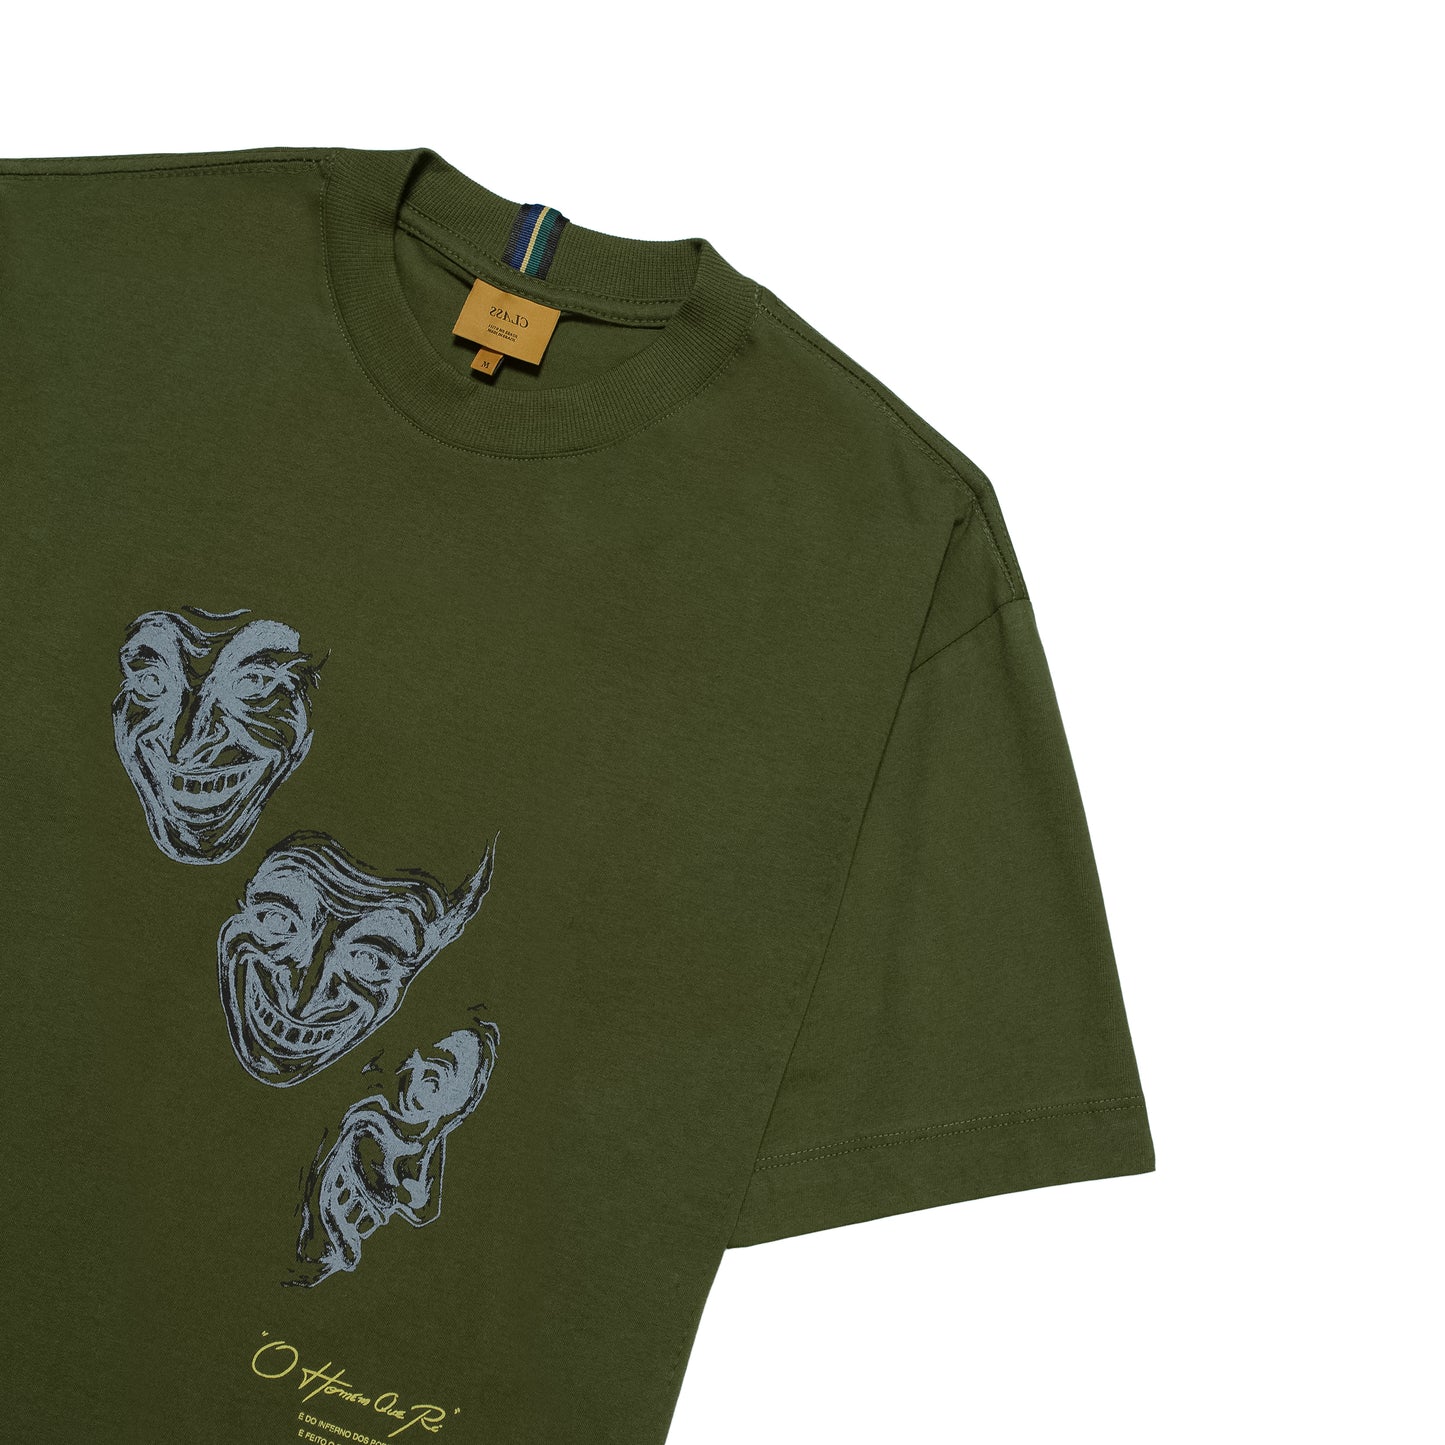 T-Shirt "O homem que rí" Green